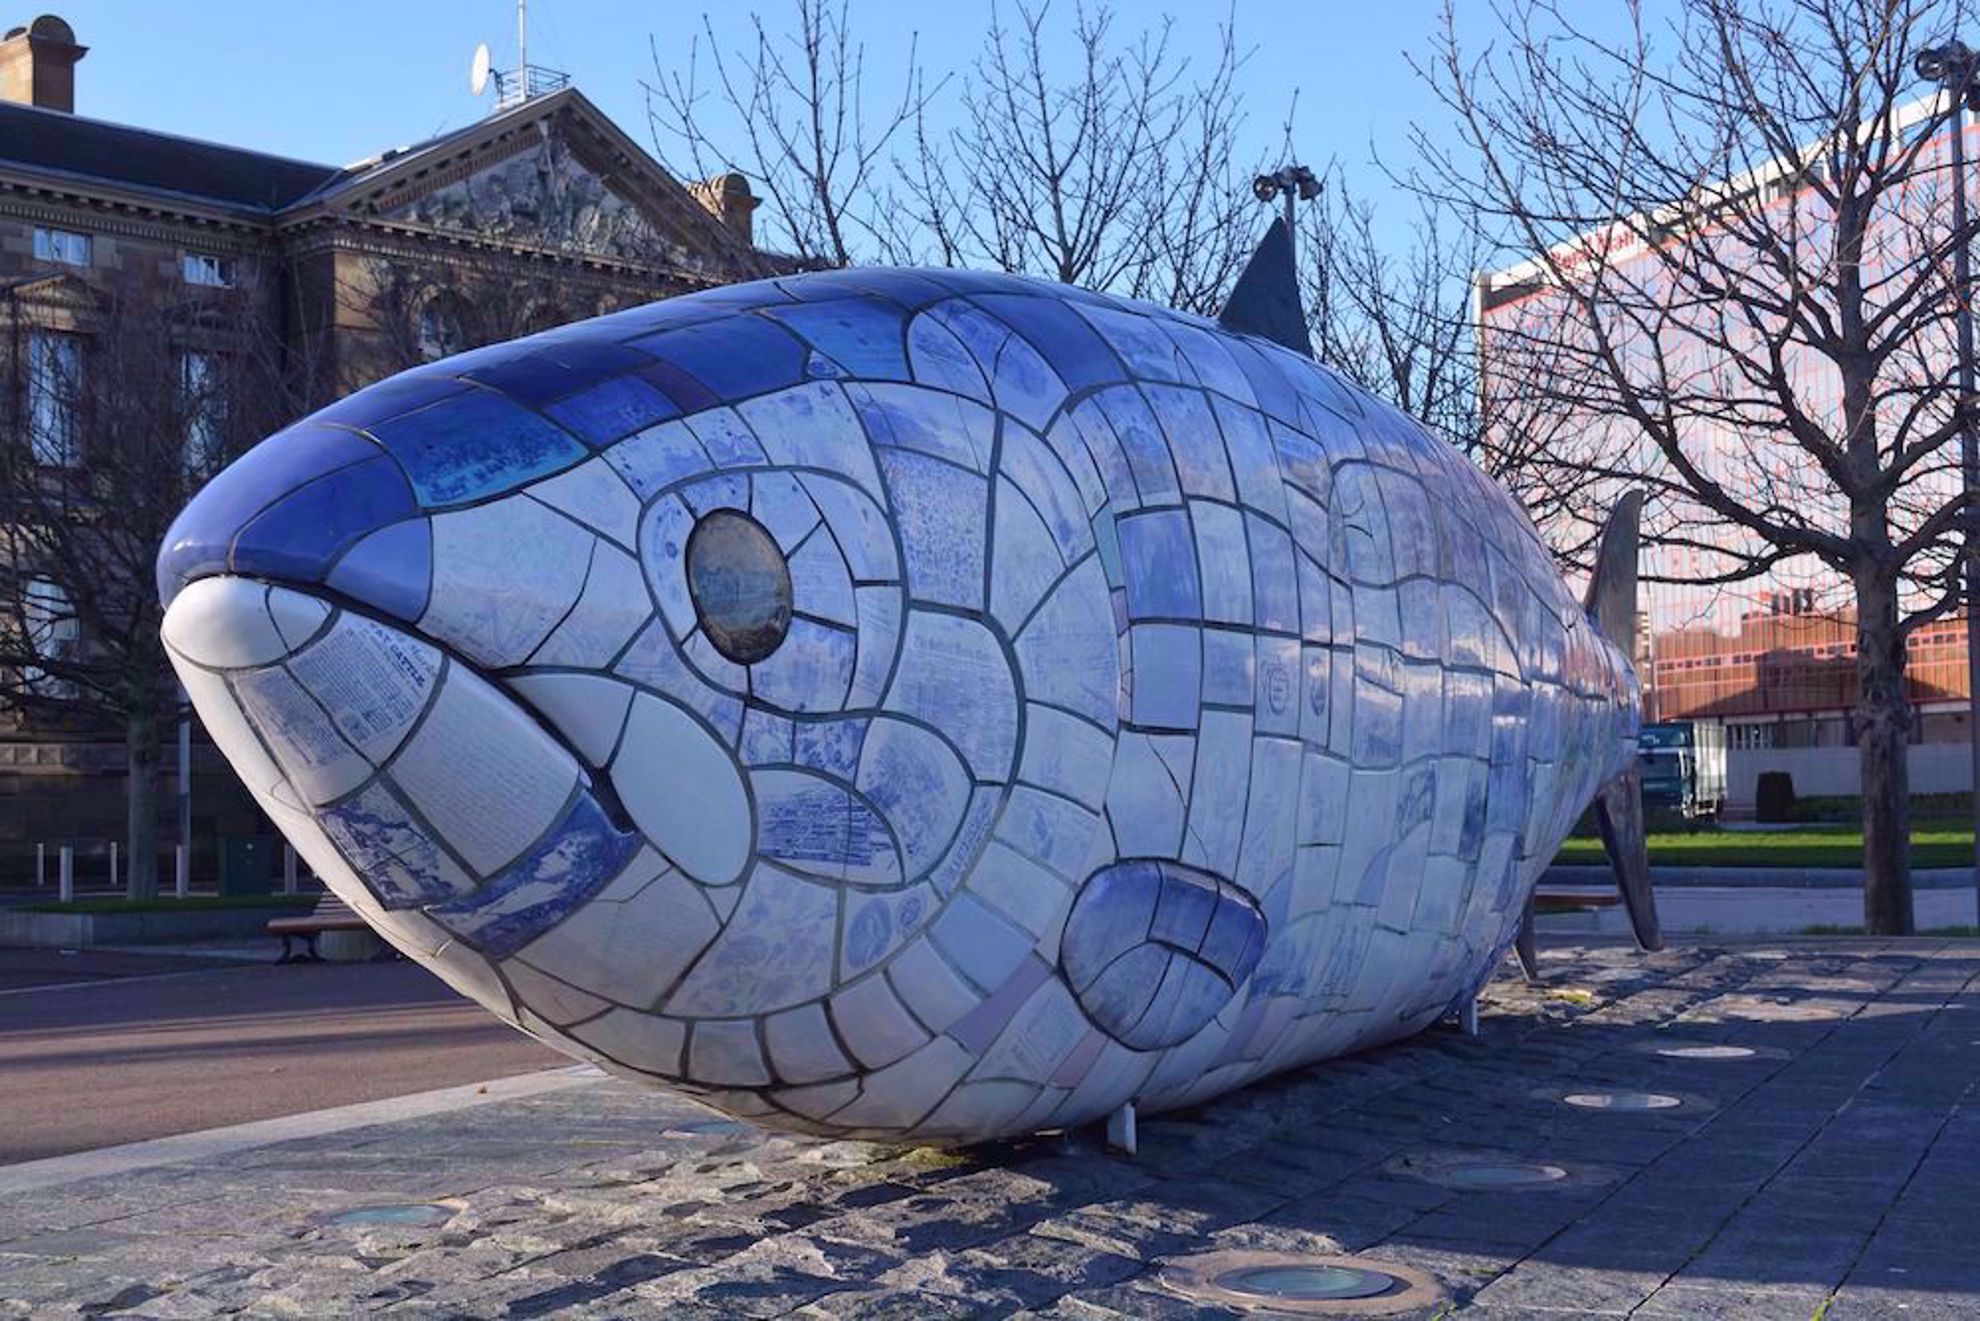 Fish sculpture in Belfast